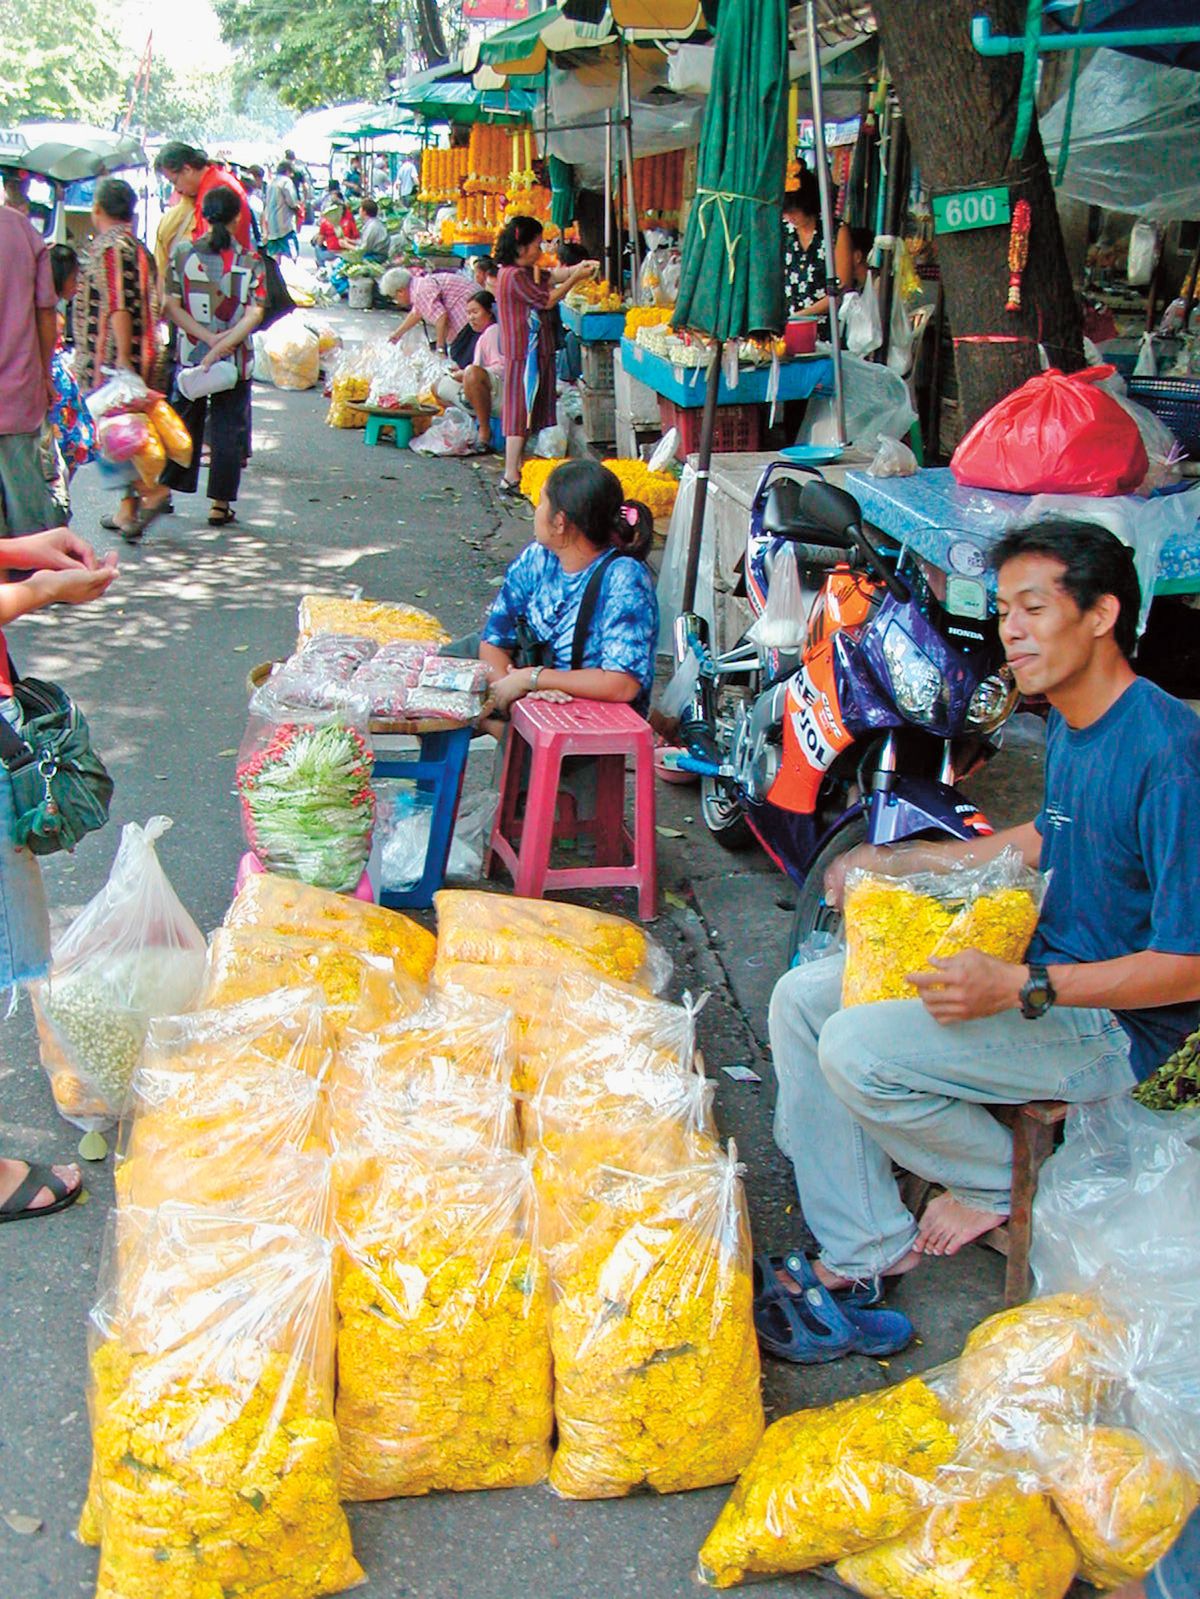 Suvenýry, květiny, ovoce, zelenina – thajské trhy jsou nepřeberné.